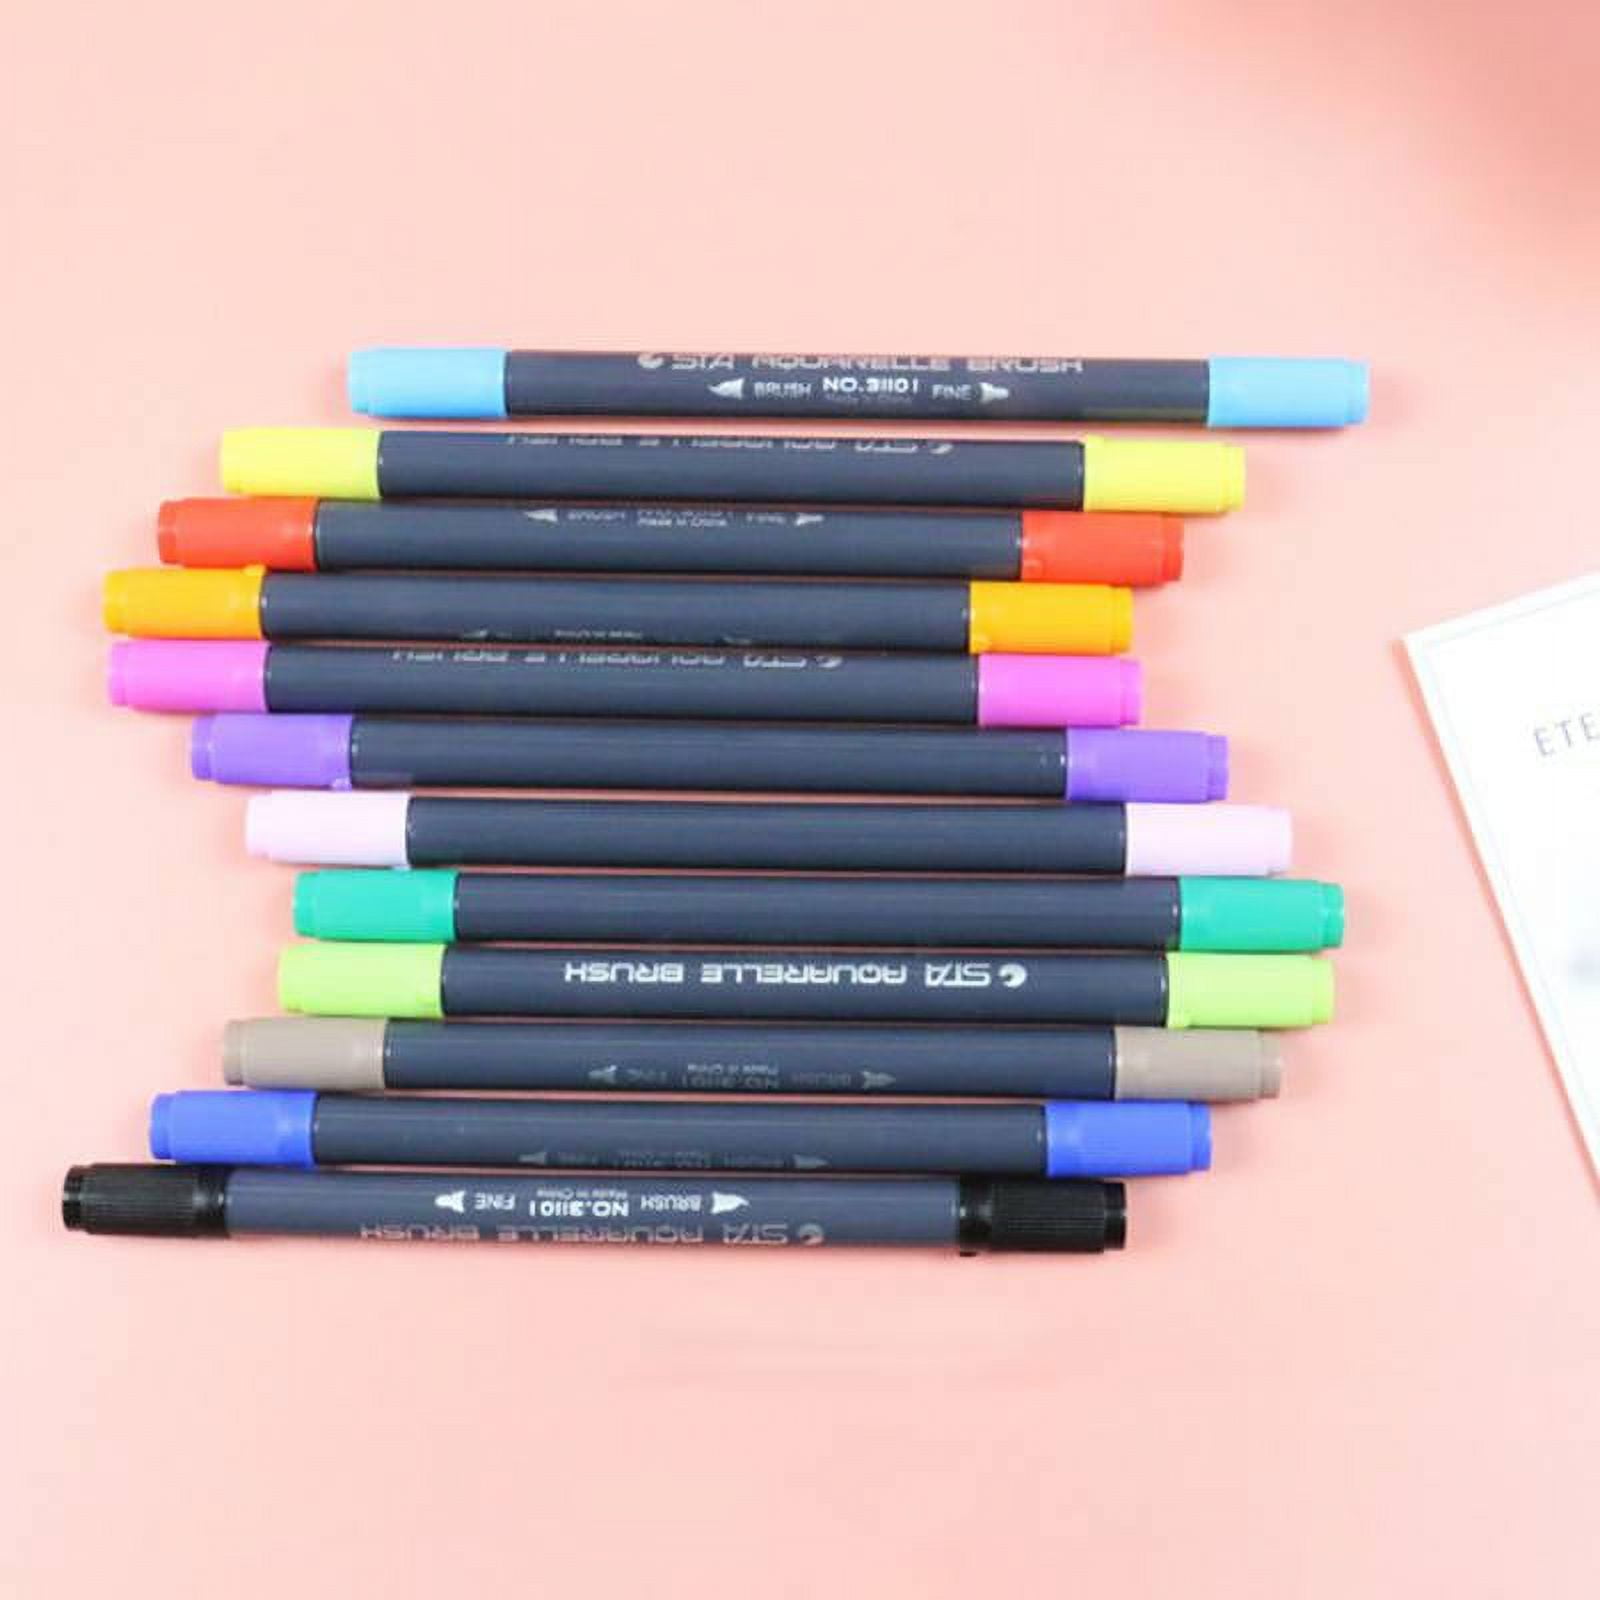 STA 80 Colors Watercolour Brush Pen Set Dual Tip Art Marker Coloring Book  Manga Calligraphy